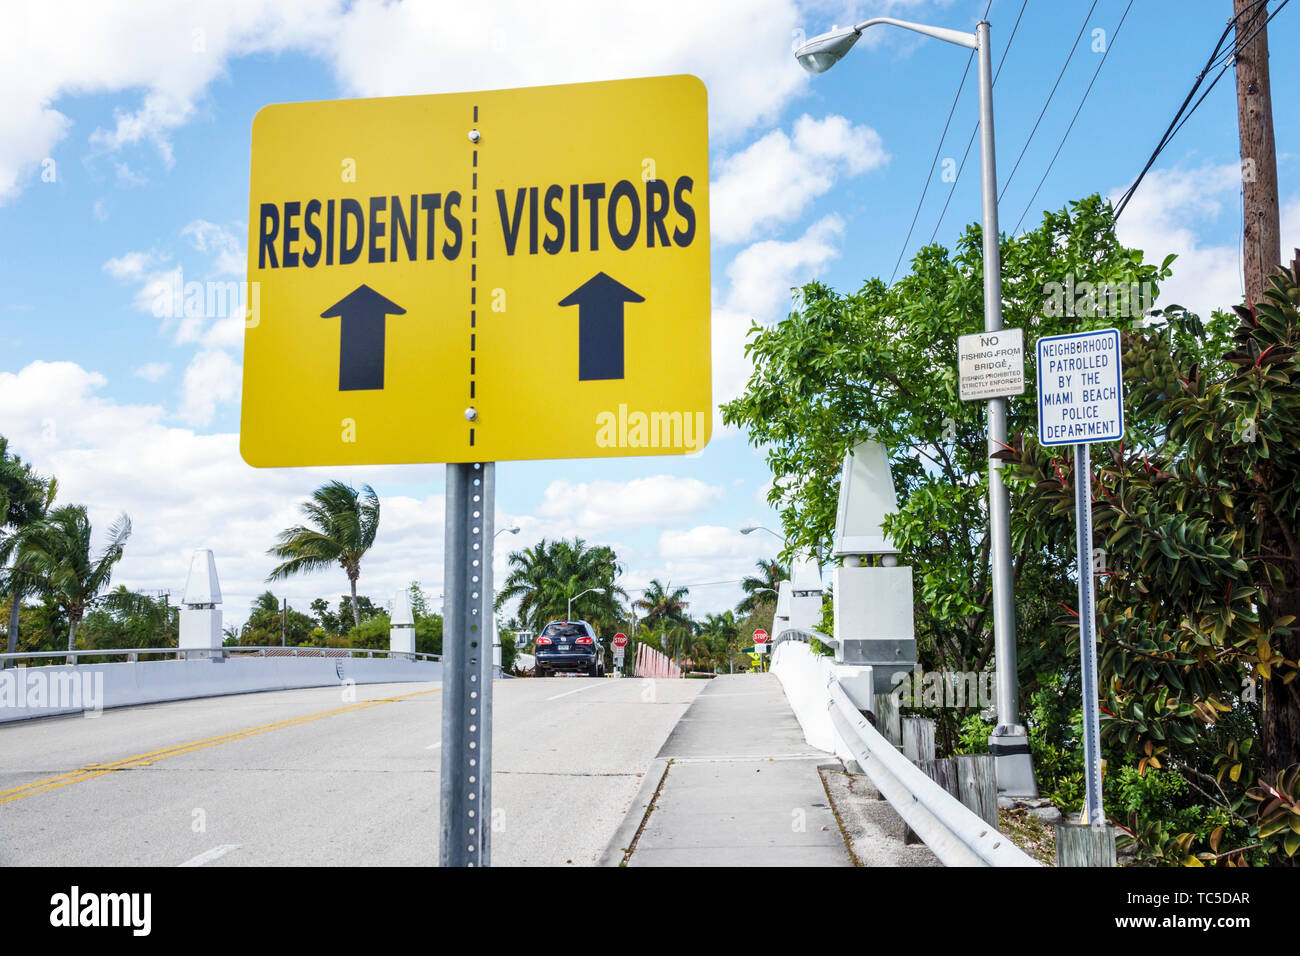 Miami Beach Florida, Normandy Shores, communauté fermée, panneau de voie, visiteurs résidents, prévention de la criminalité de sécurité, FL190331027 Banque D'Images